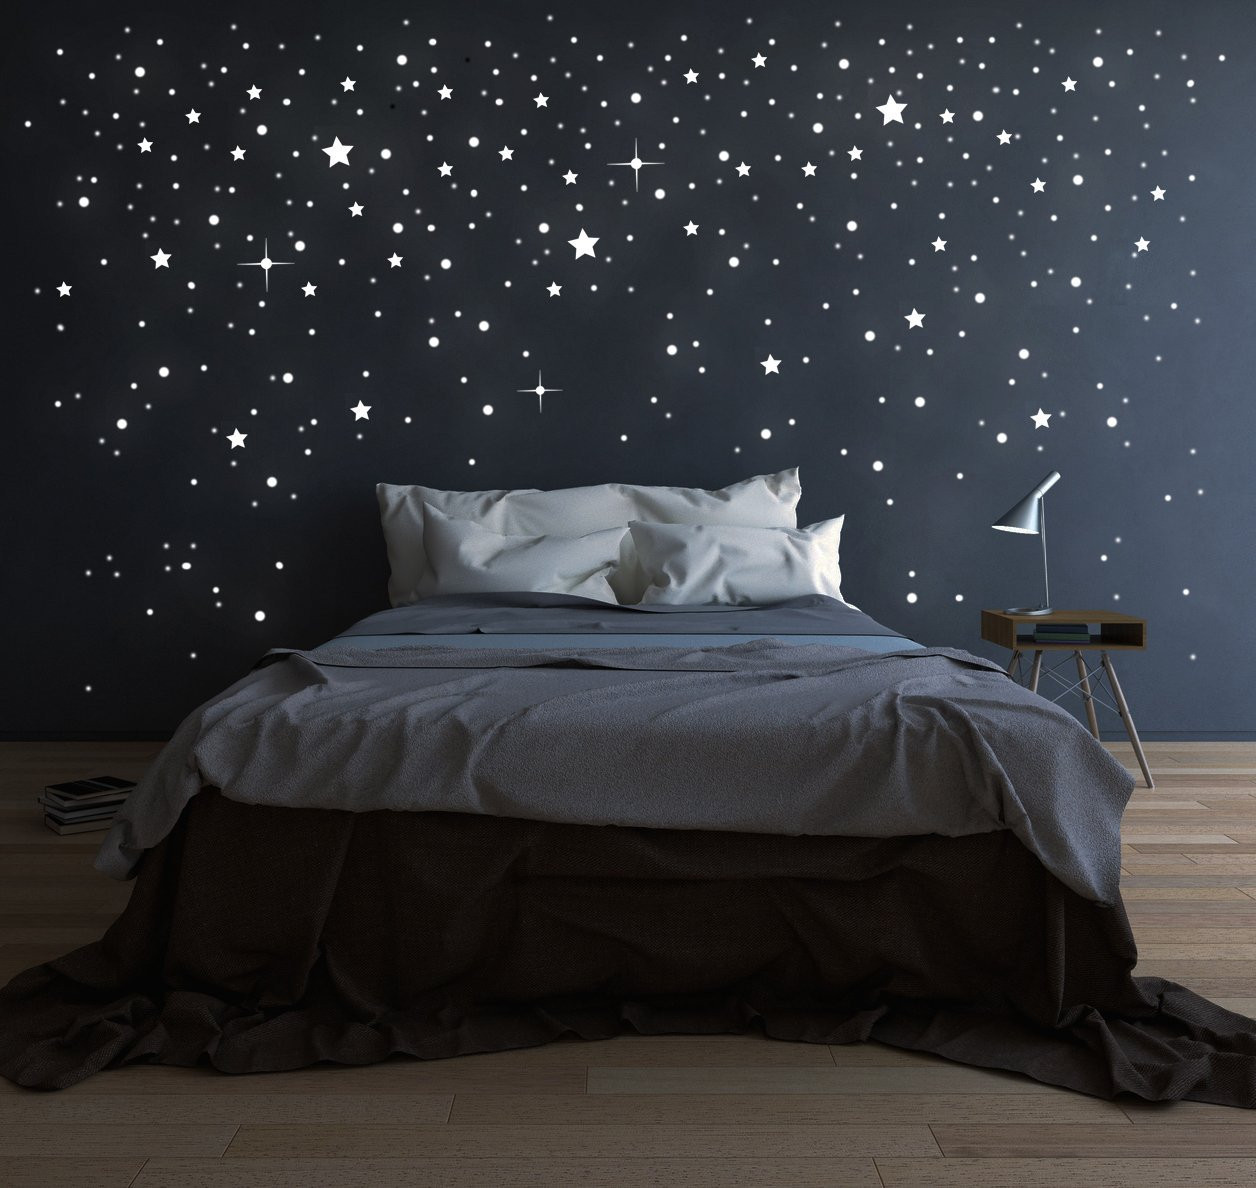 Riesen Sternenhimmel Sterne Elfentür, Leuchtsterne M1228 fluoreszierend ~ Wandtattoos Tassen